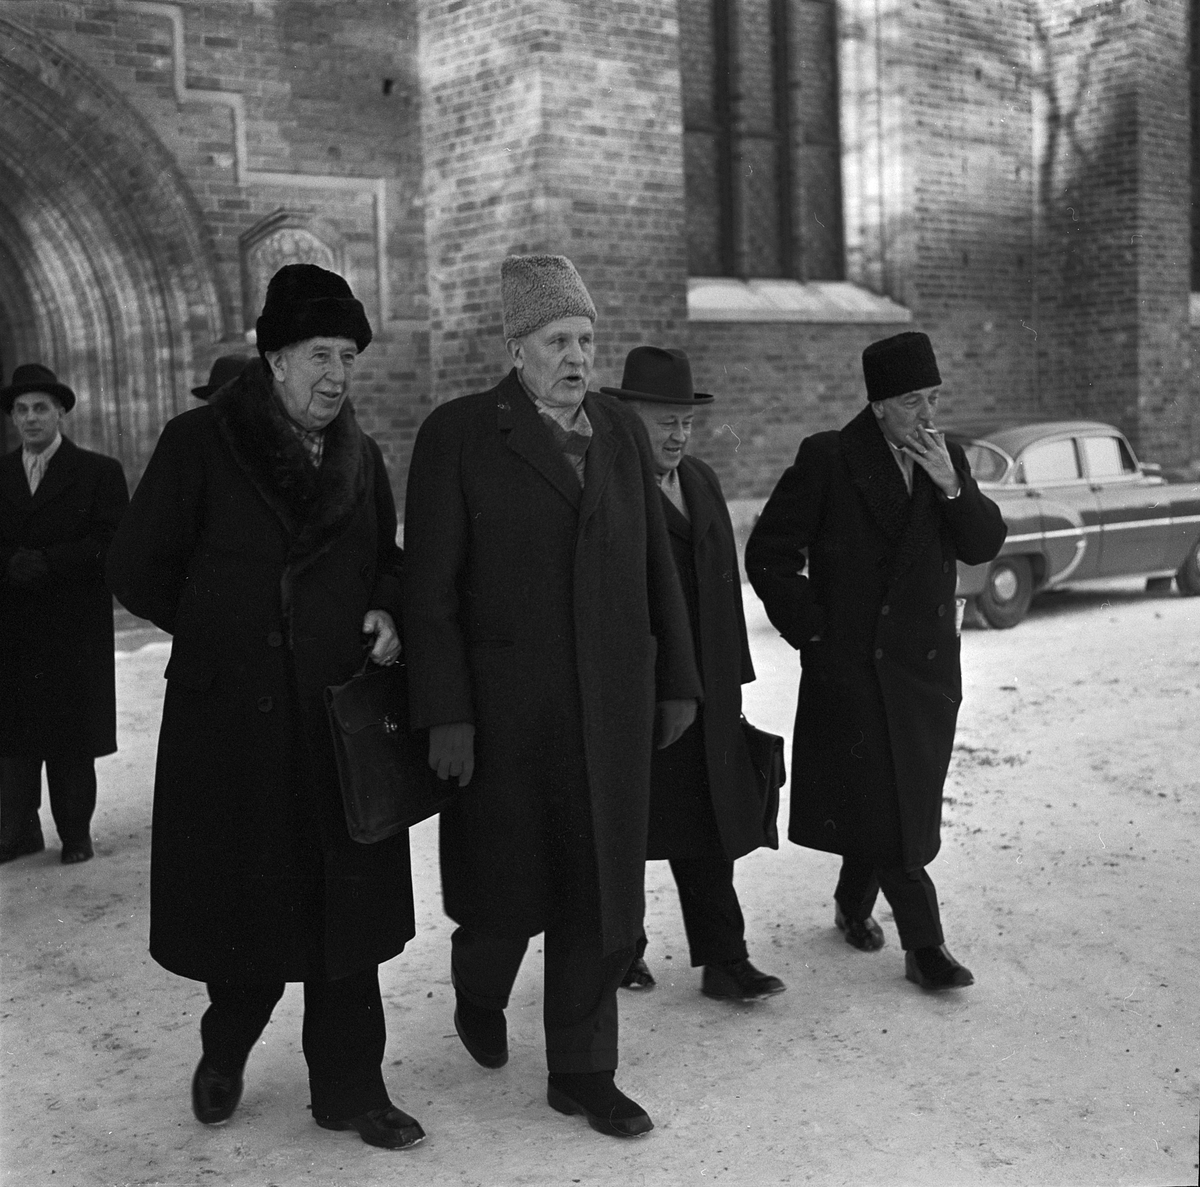 Prov i atomreaktor kan avgöra om Erik XIV mördades eller ej, Uppsala 1958